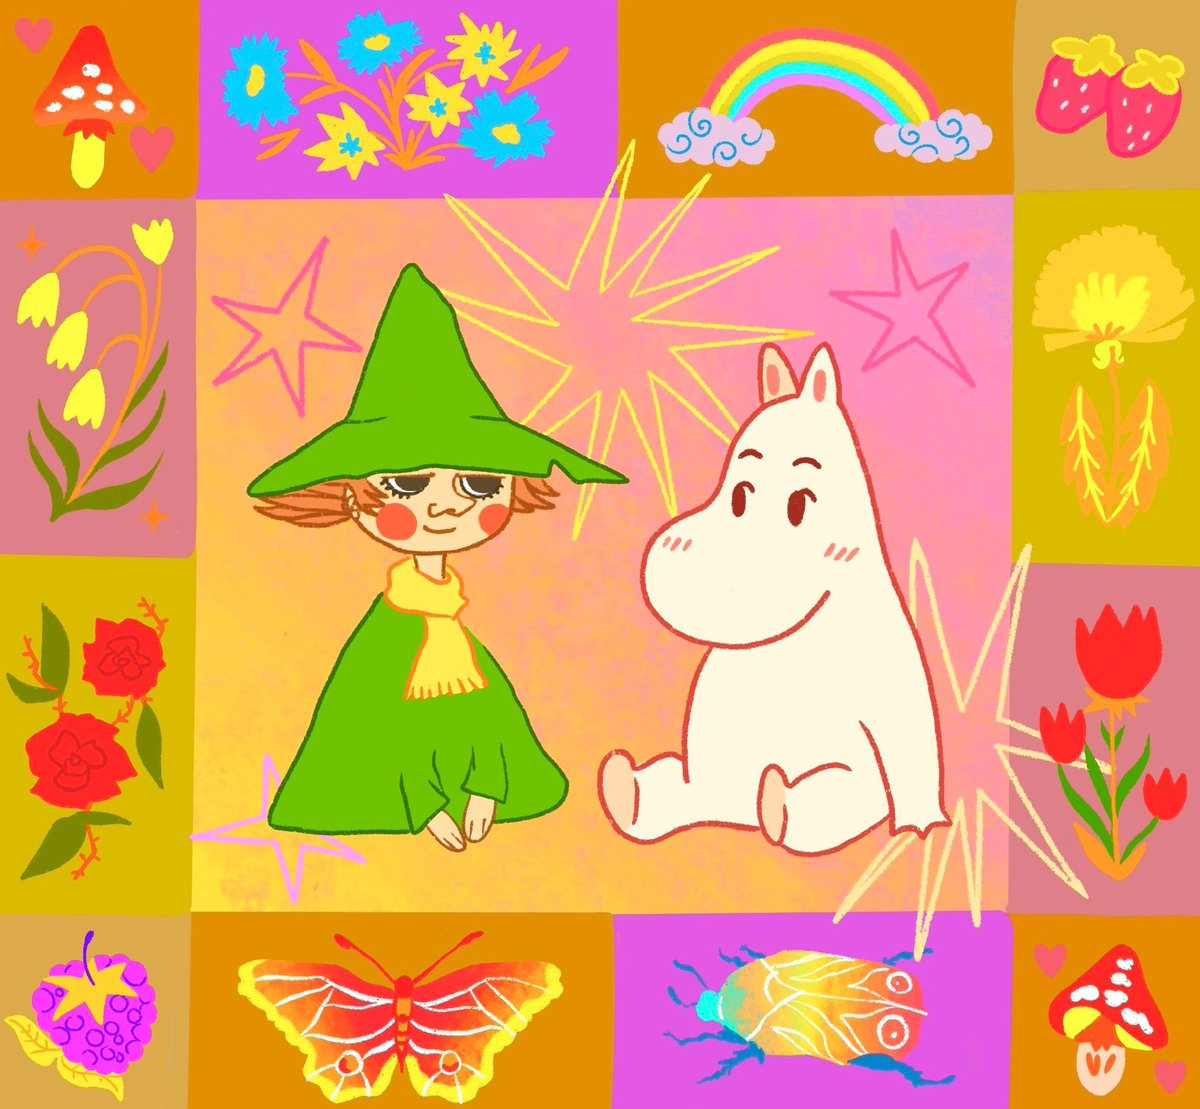 My favorite best friends :) art by me 

#moomin #moominvalley